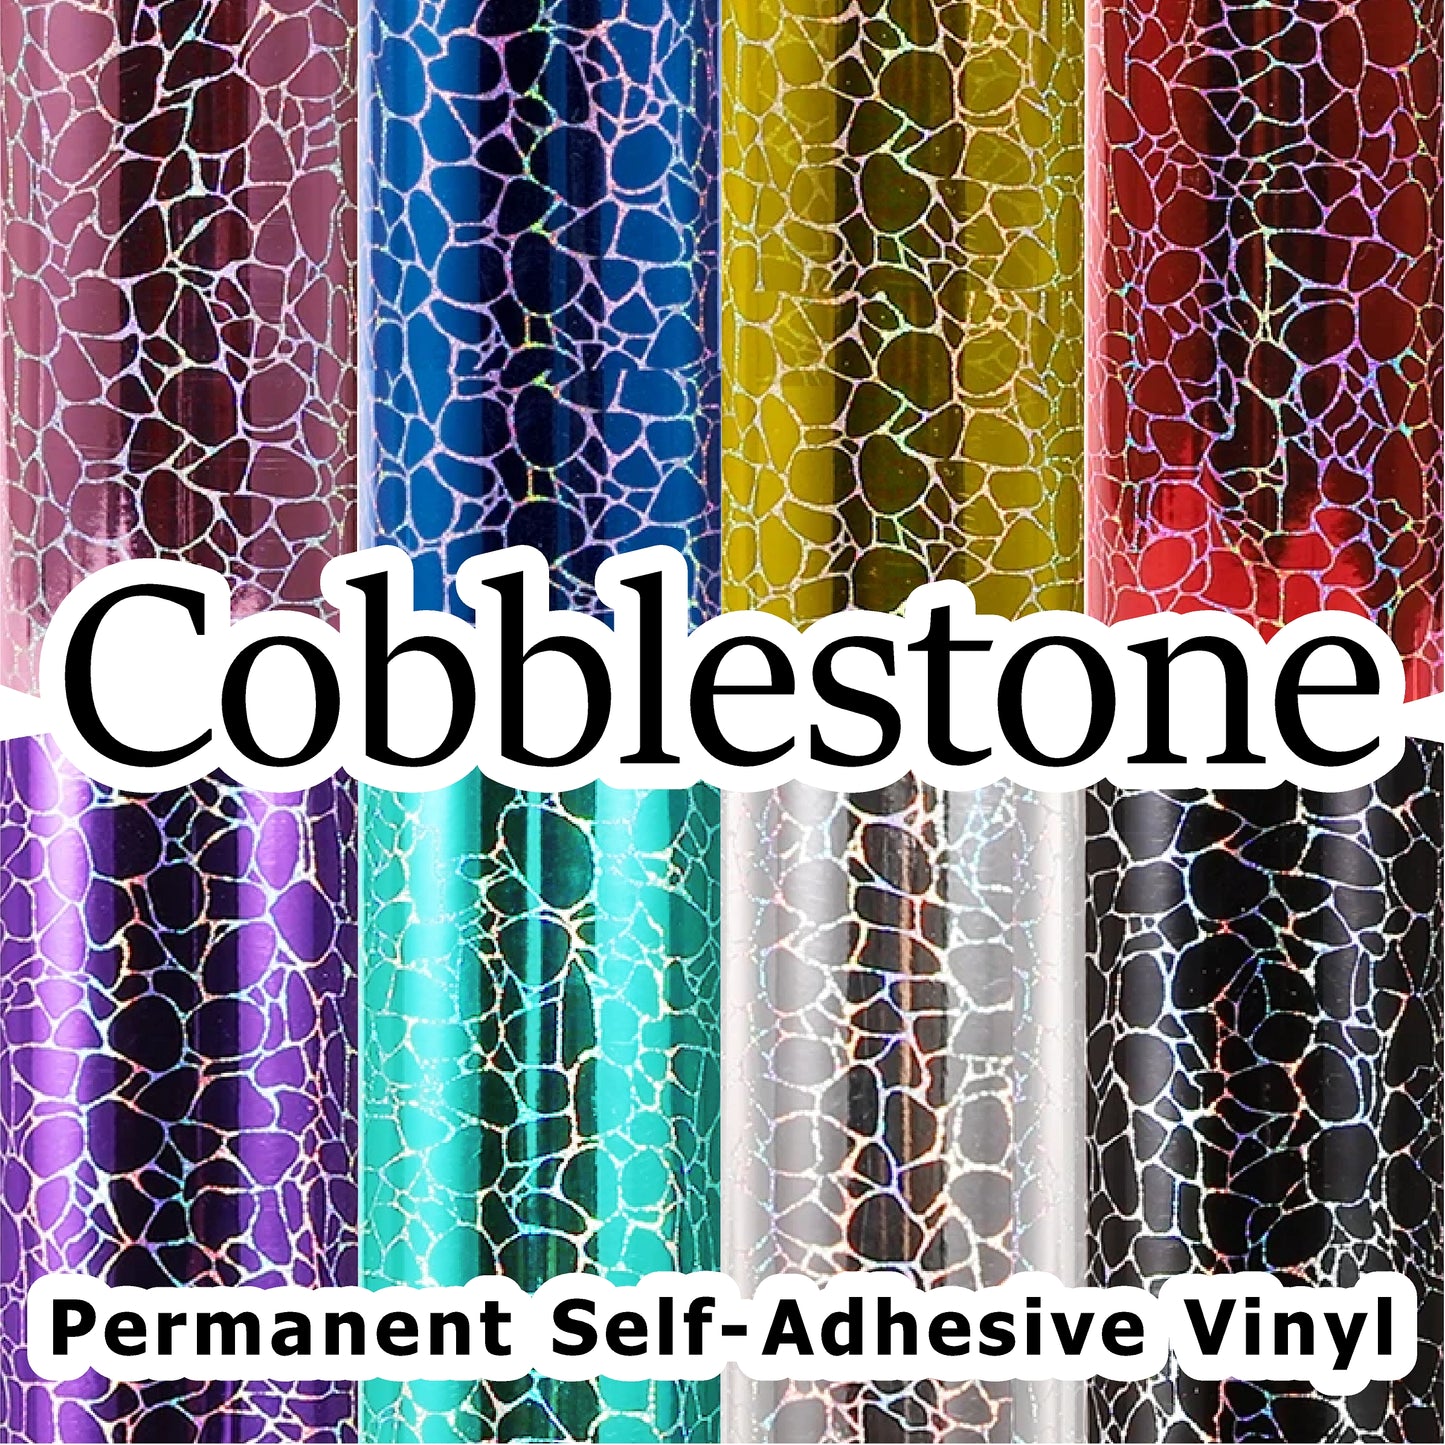 Cobblestone Permanent Self-Adhesive Vinyl Vinyl Me Now